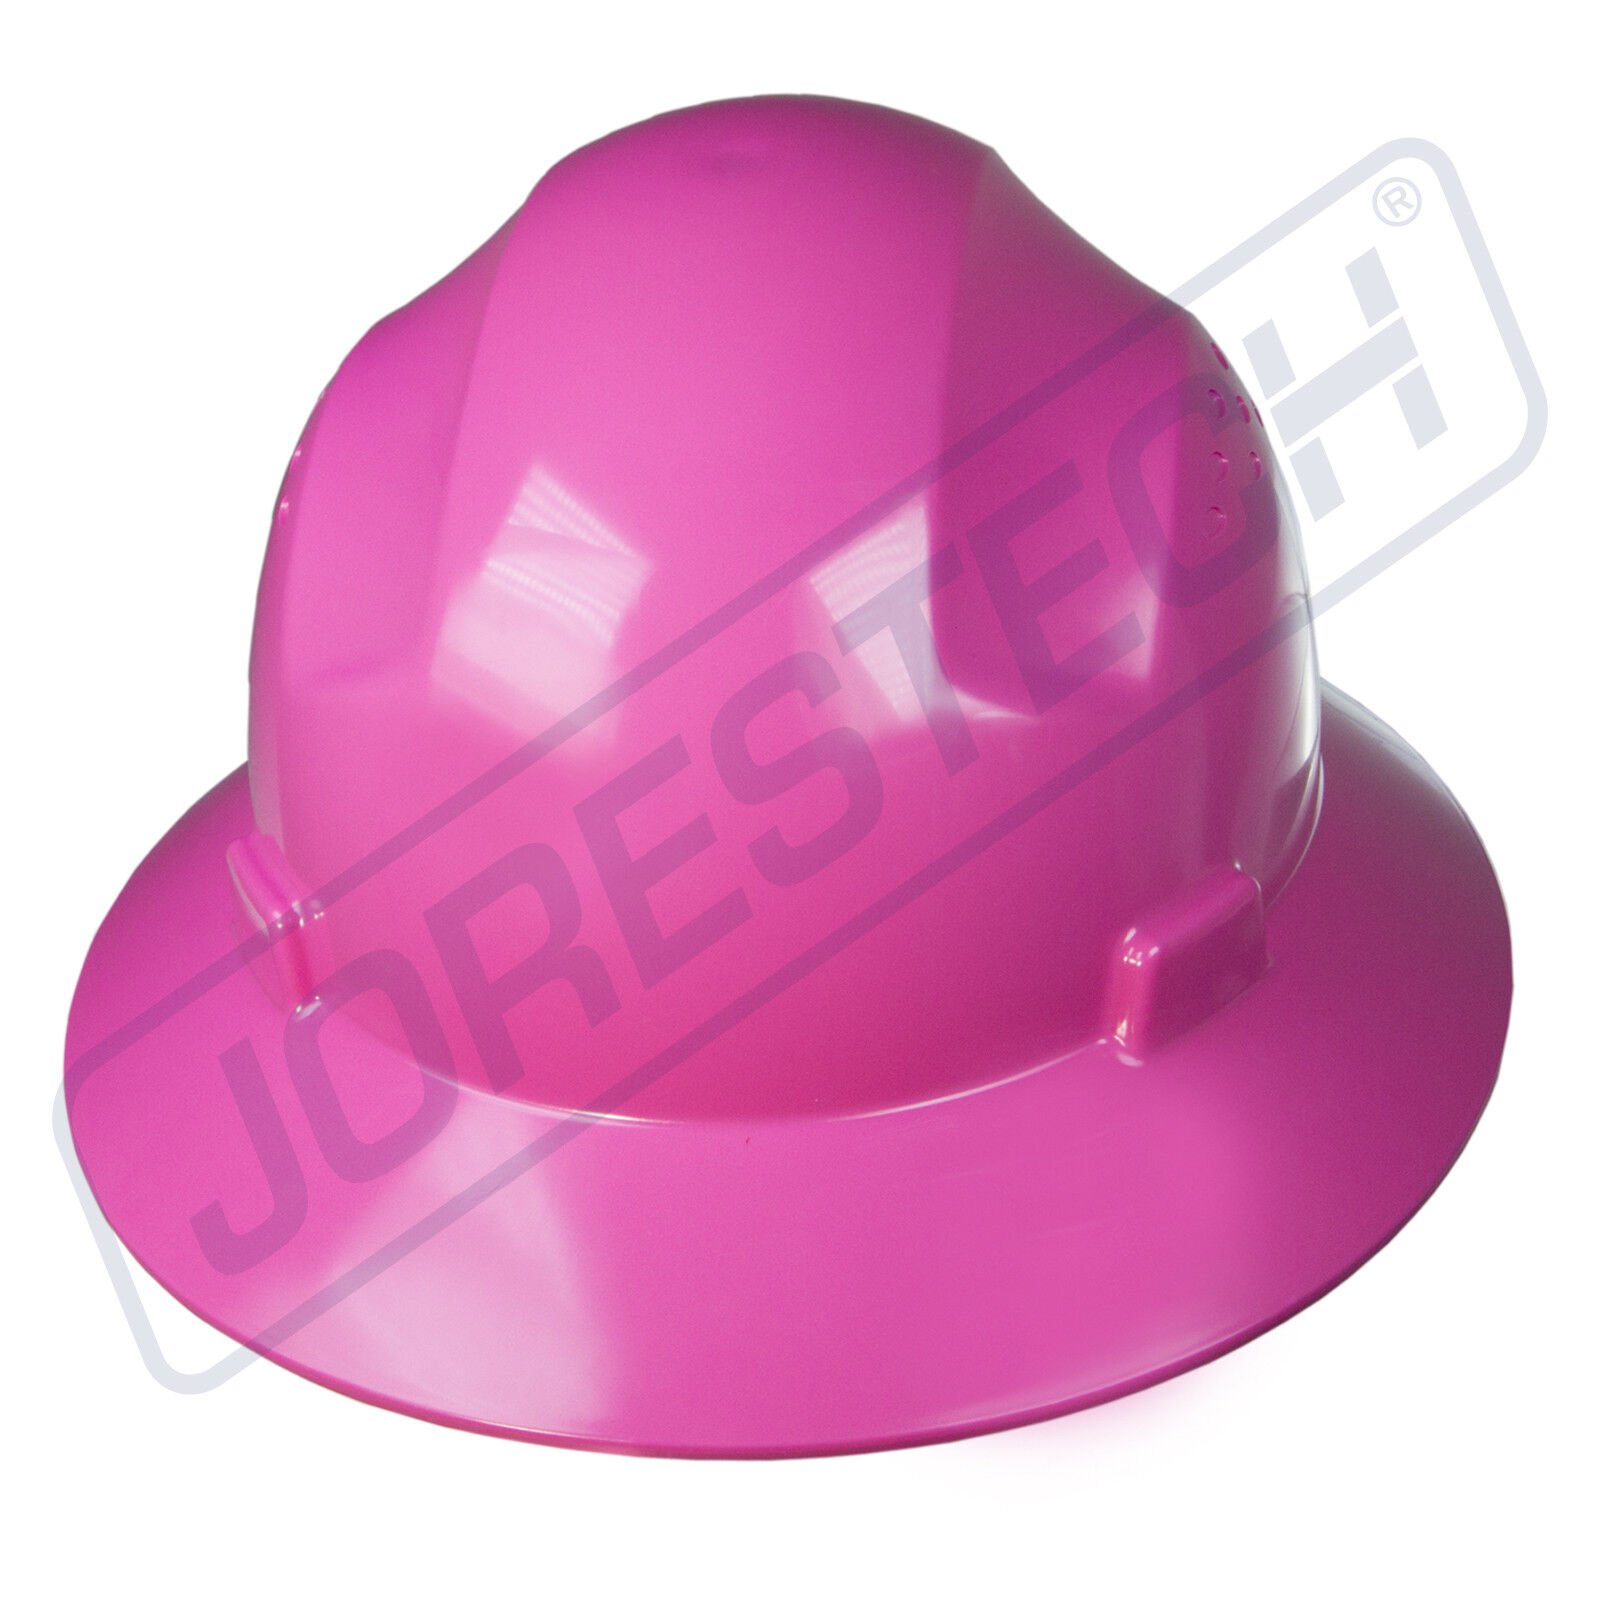 Каска ковбой. Каска защитная ковбойская шляпа. Каска розовая строительная женская. Каска строительная в форме шляпы. Строительная каска в виде ковбойской шляпы.